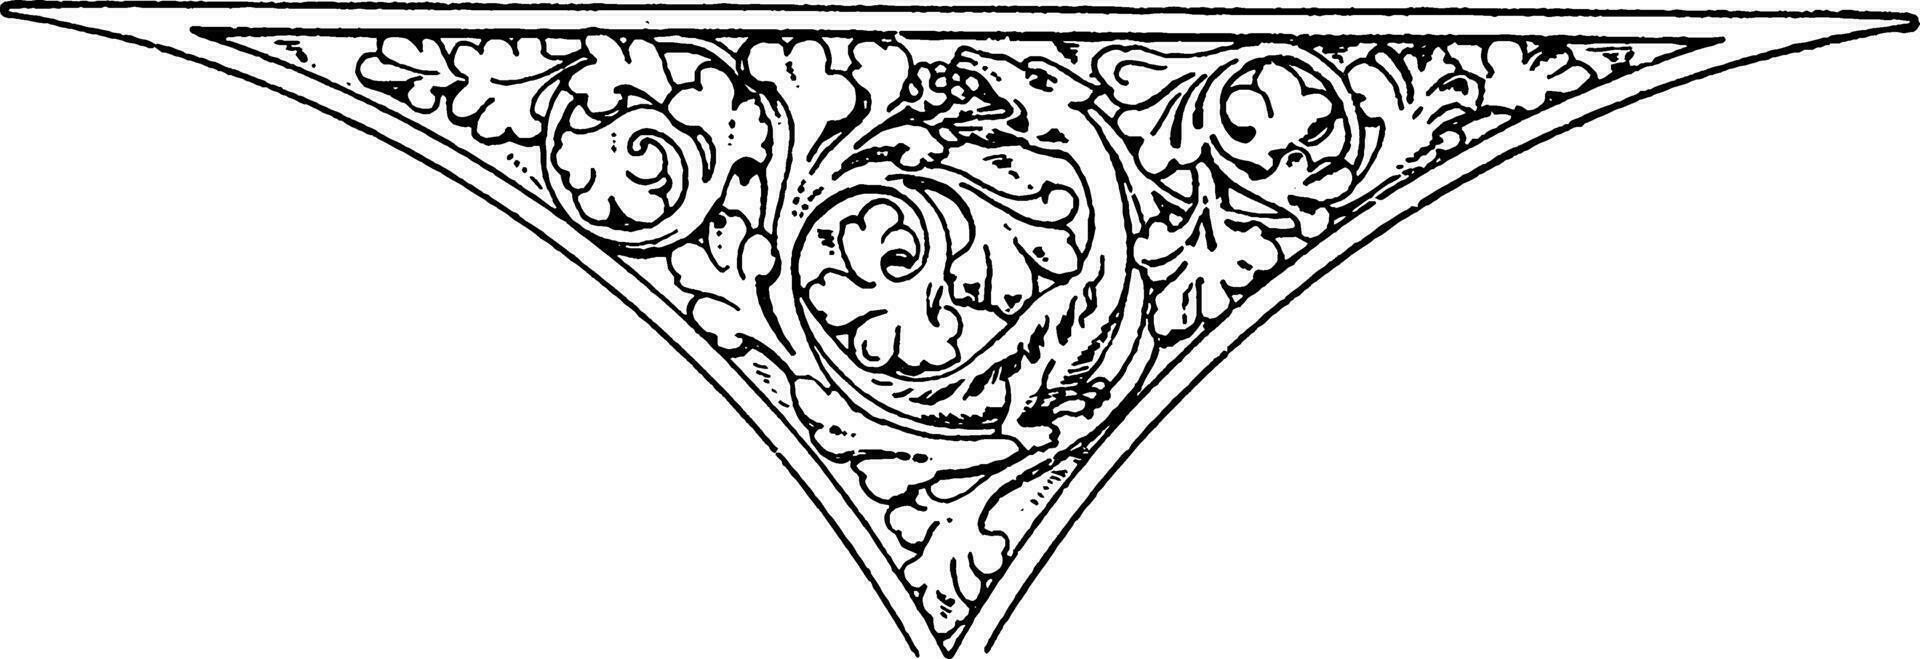 vroeg gotisch spanrail paneel is gevonden in een steen kerk in Engeland, wijnoogst gravure. vector